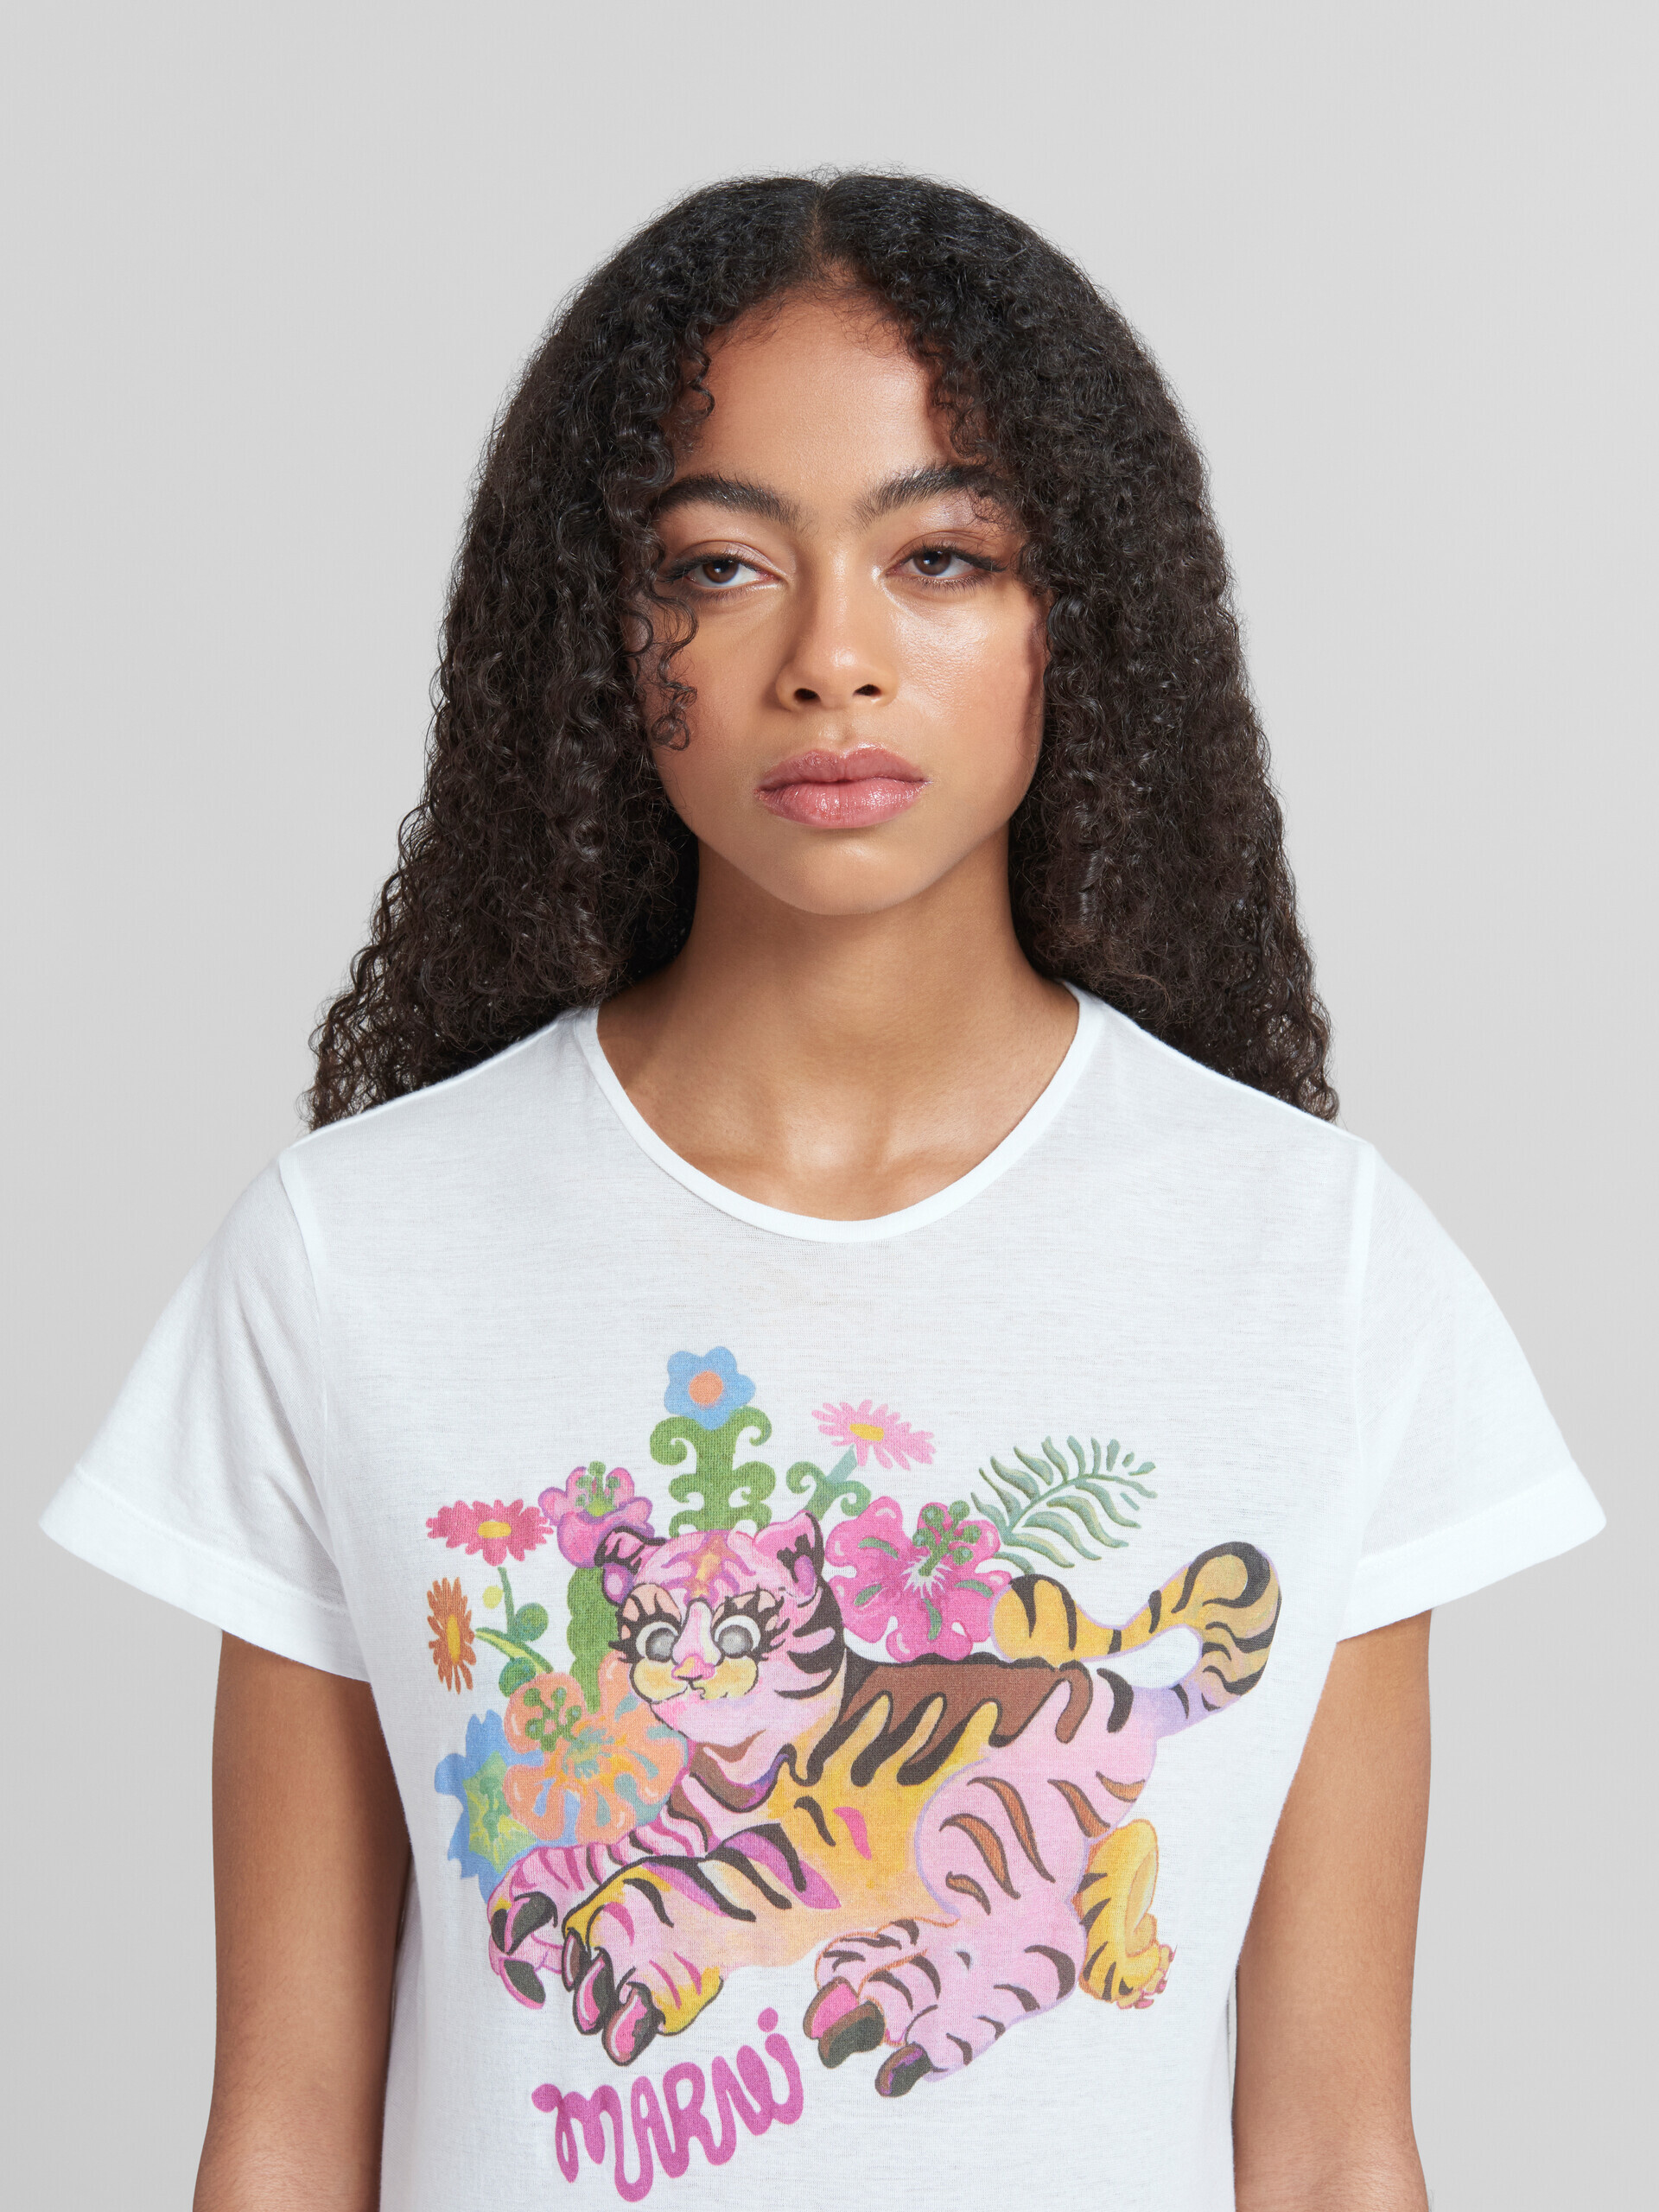 プリント入りホワイトのオーガニックジャージー製スリムフィットTシャツ - Tシャツ - Image 4